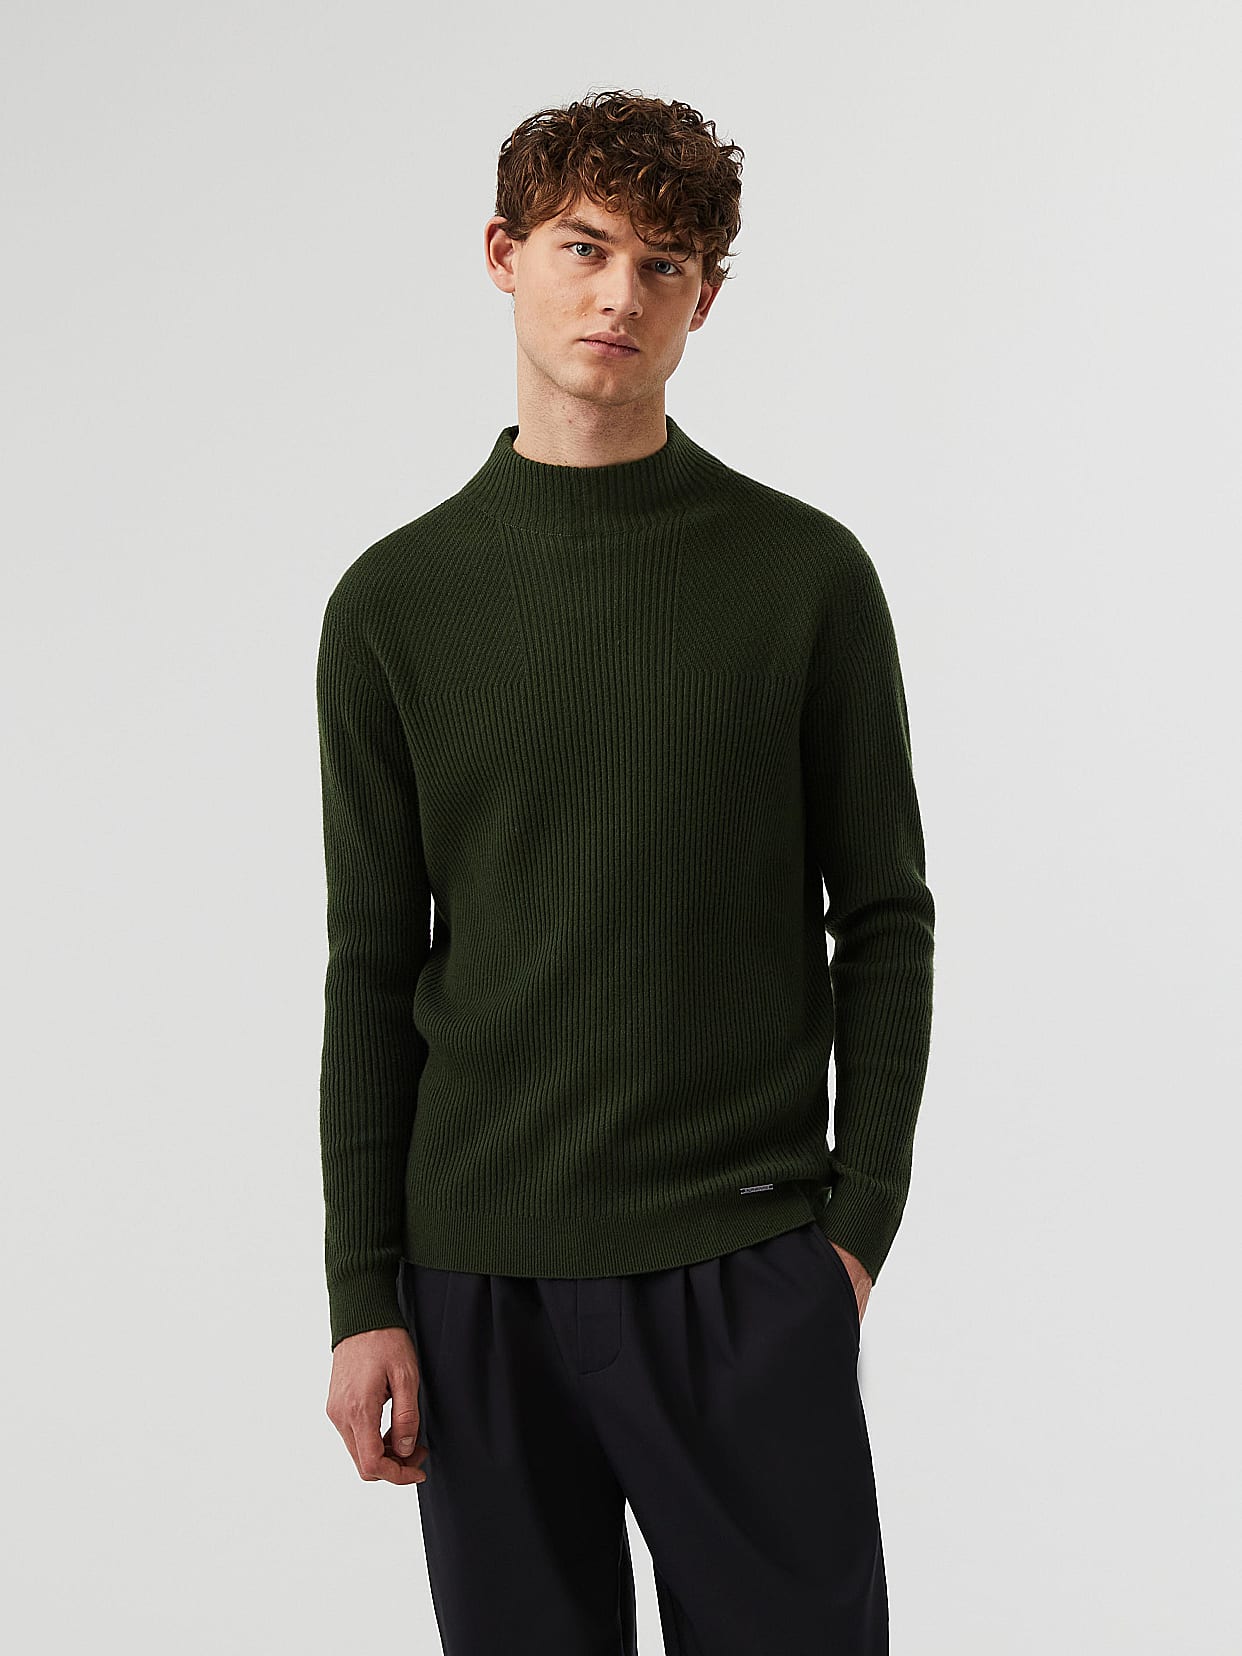 Seamless 3D Knit Cashmere-Blend Turtleneck Sweater, FLUCK V4.Y7.02, Dark  Green